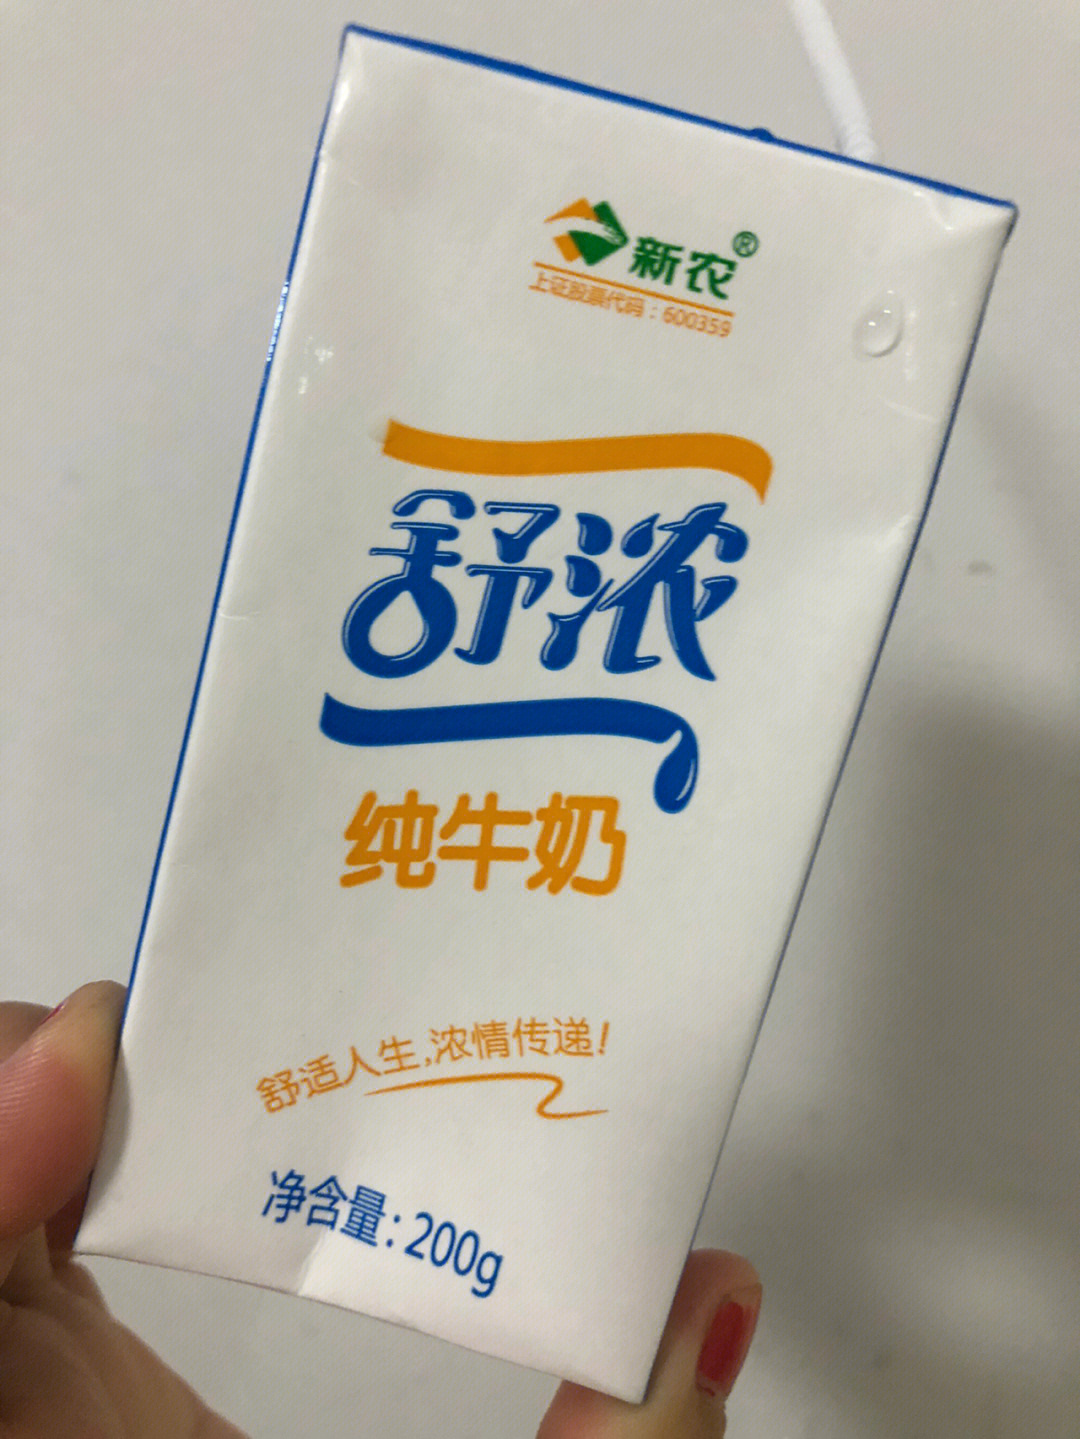 新农牛奶 公司简介图片